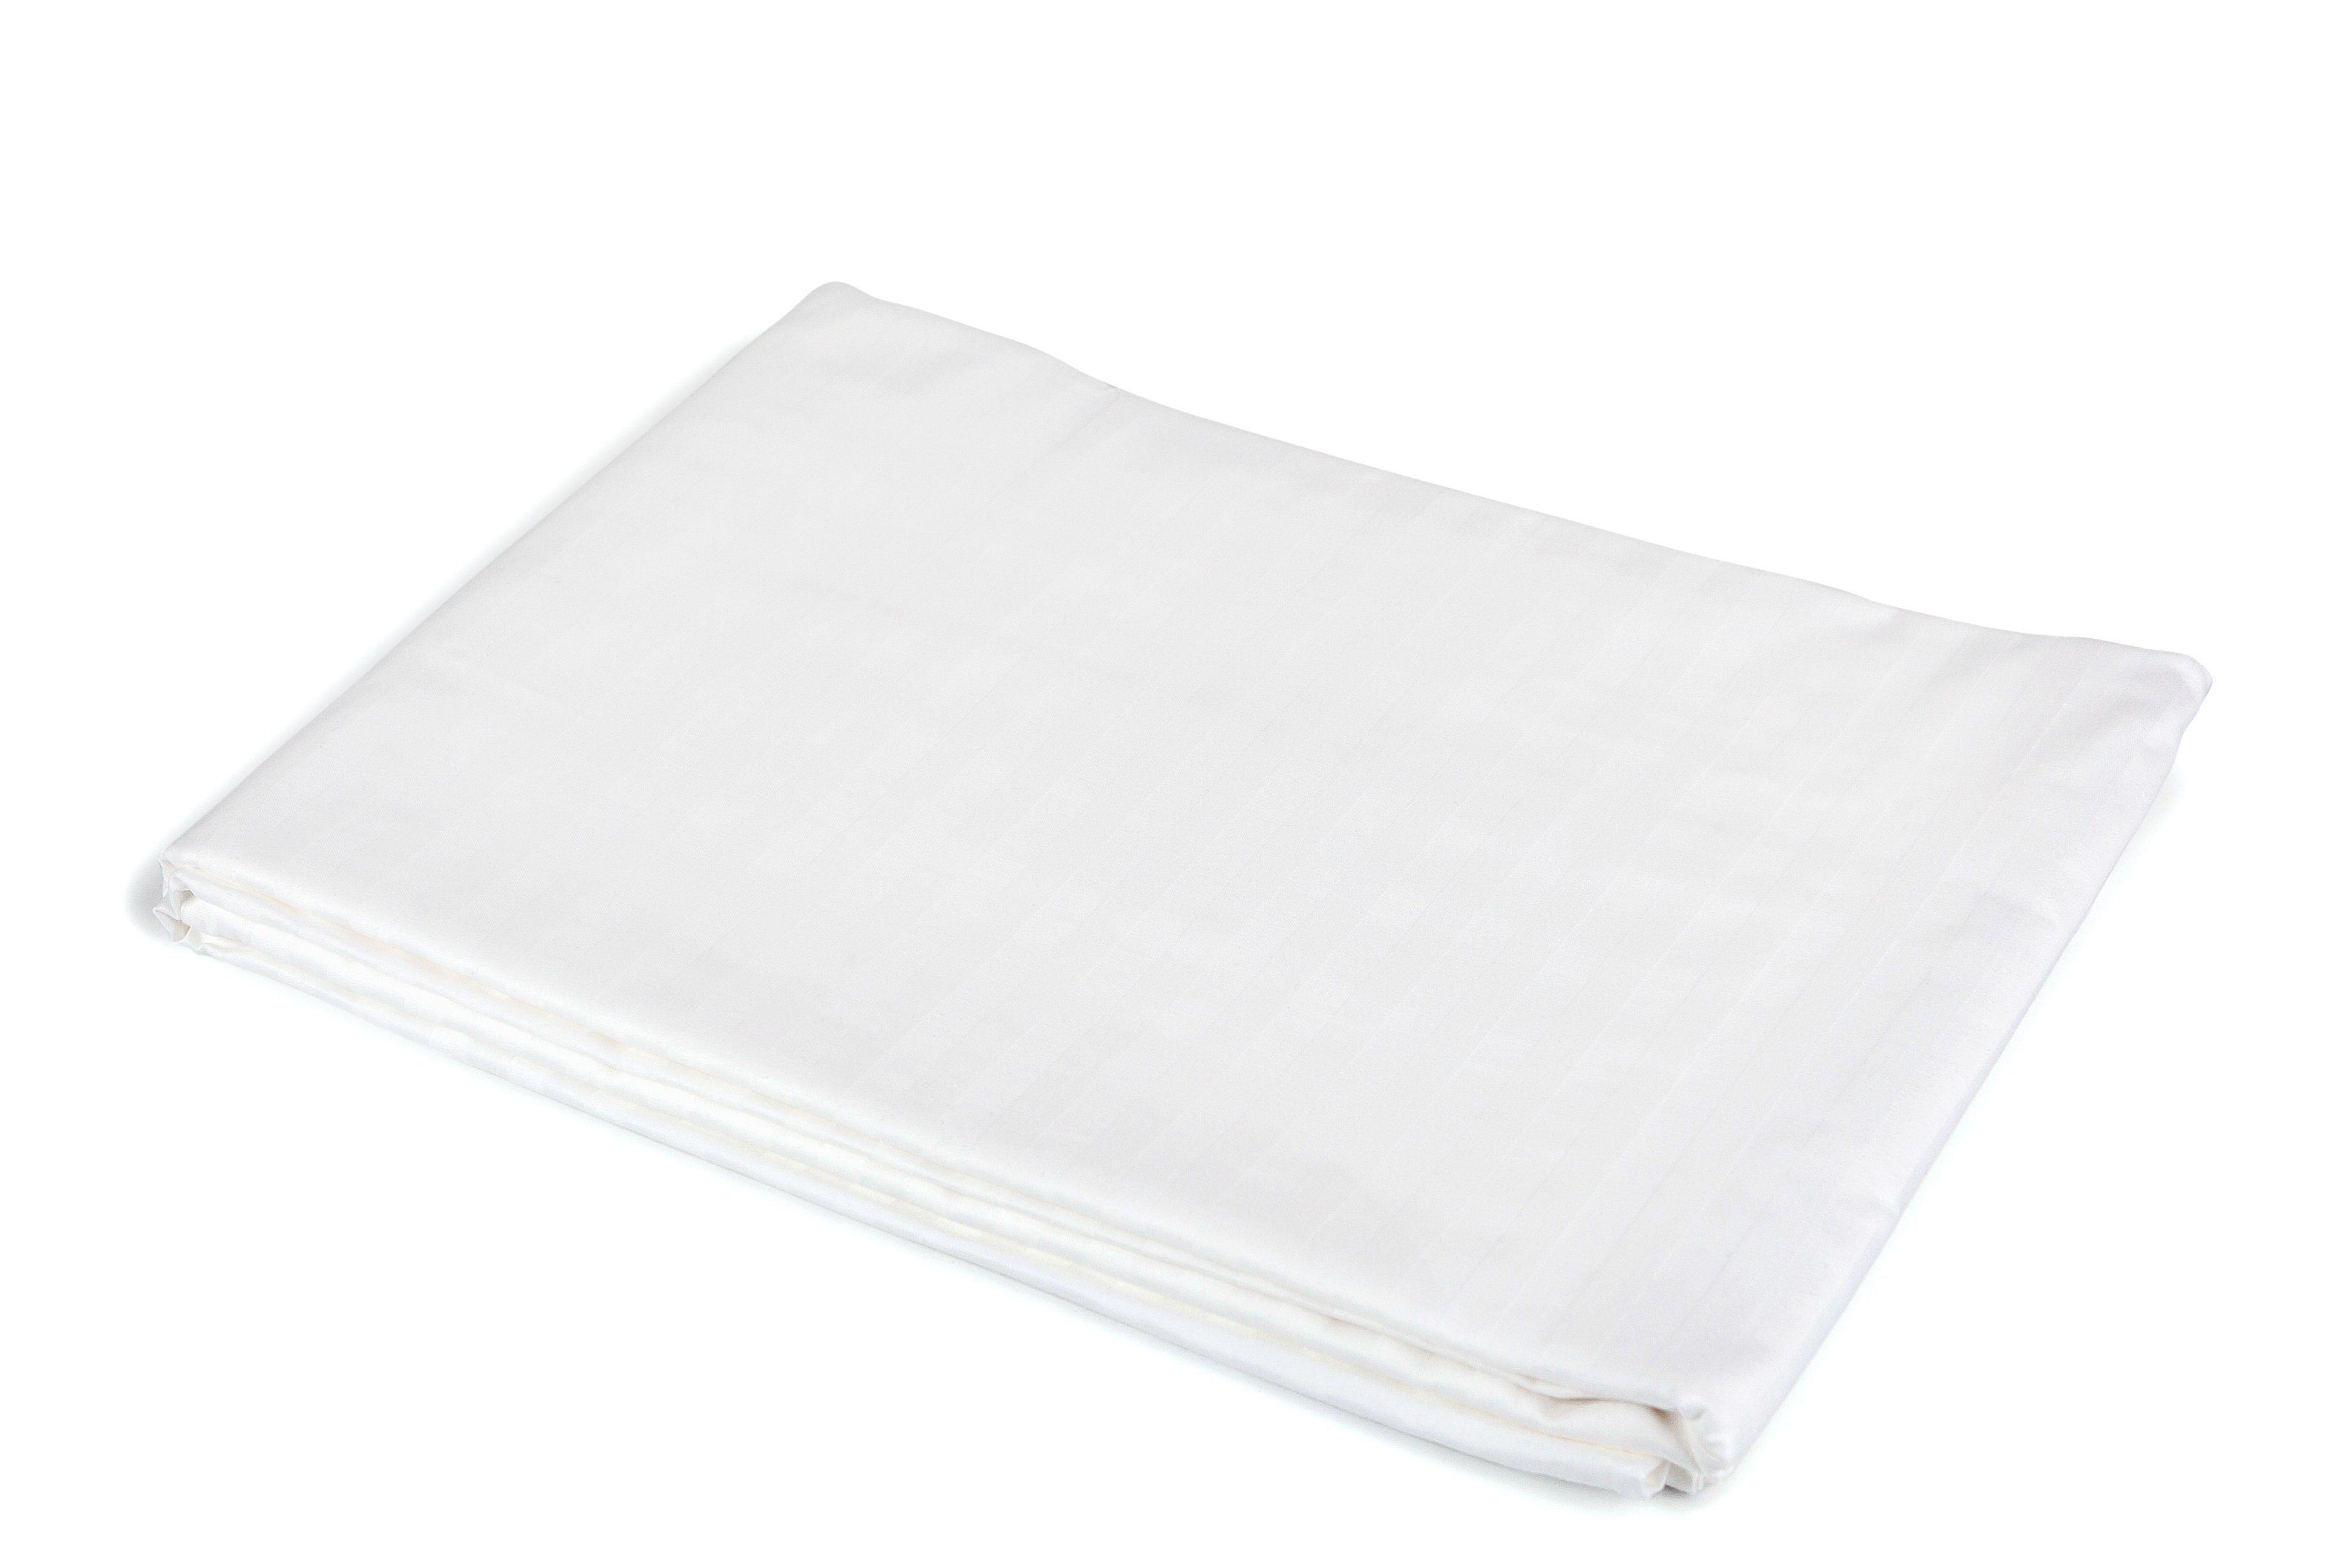 Das Laken ist in verschiedenen Größen erhältlich Glattes weißes Blatt ohne Gummi; Bettlaken Baumwolle 100% Bettlaken 200x220 die in jedes Schlafzimmer passen und Sich dort wohl fühlen.